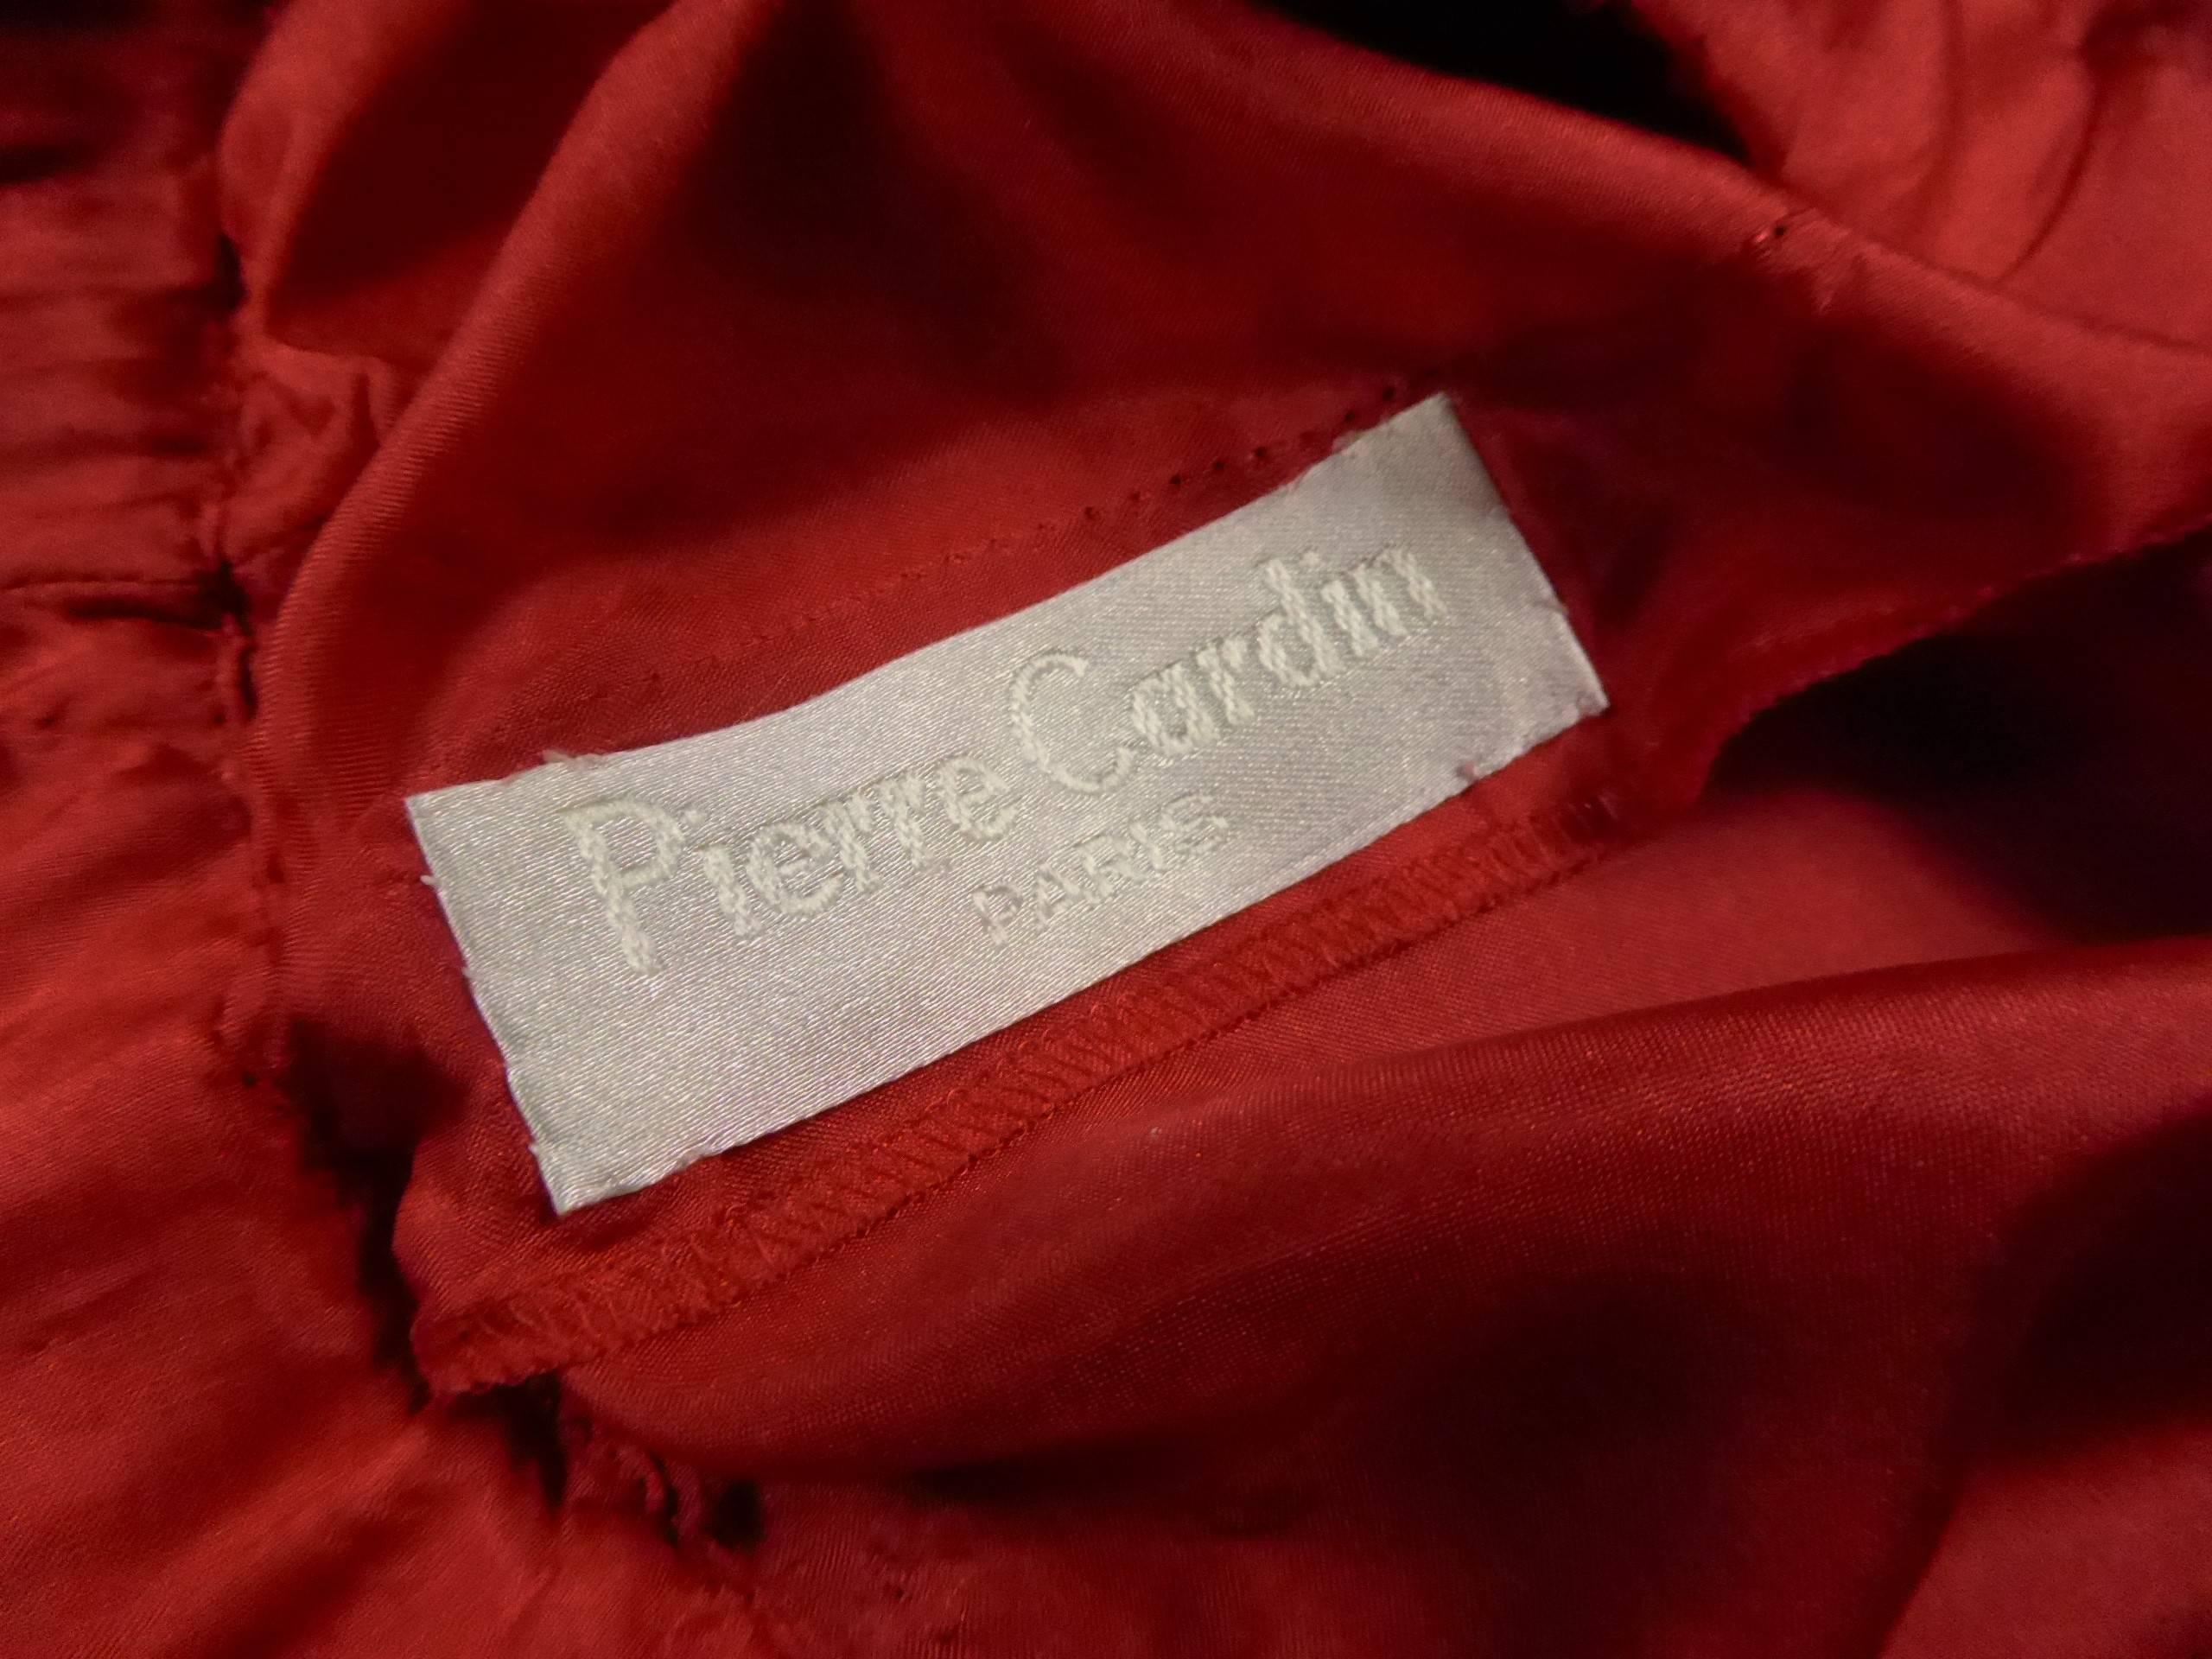  Début 1980.

France.

Robe rouge nacré de Pierre Cardin, en satin de polyester, doublure intérieure en viscose rouge. Sous jupe maintenue par deux pressions noires à l'intérieur de la robe. Grandes manches chauve-souris trois quarts. Fendu sur le